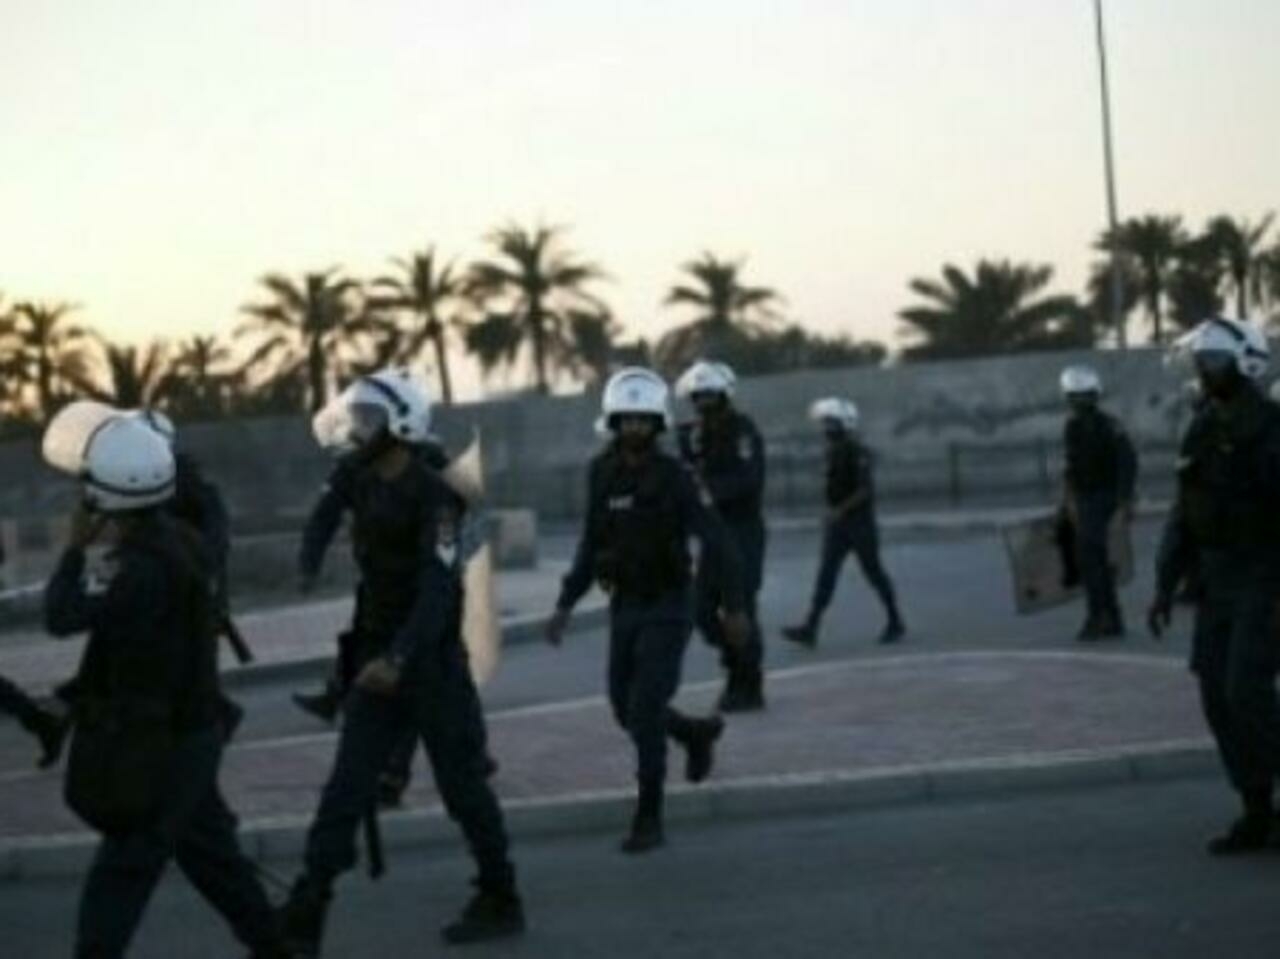 الثالث خلال أشهر.. منظمات حقوقية تطالب بتحقيق مستقل بوفاة معتقل بسجون البحرين